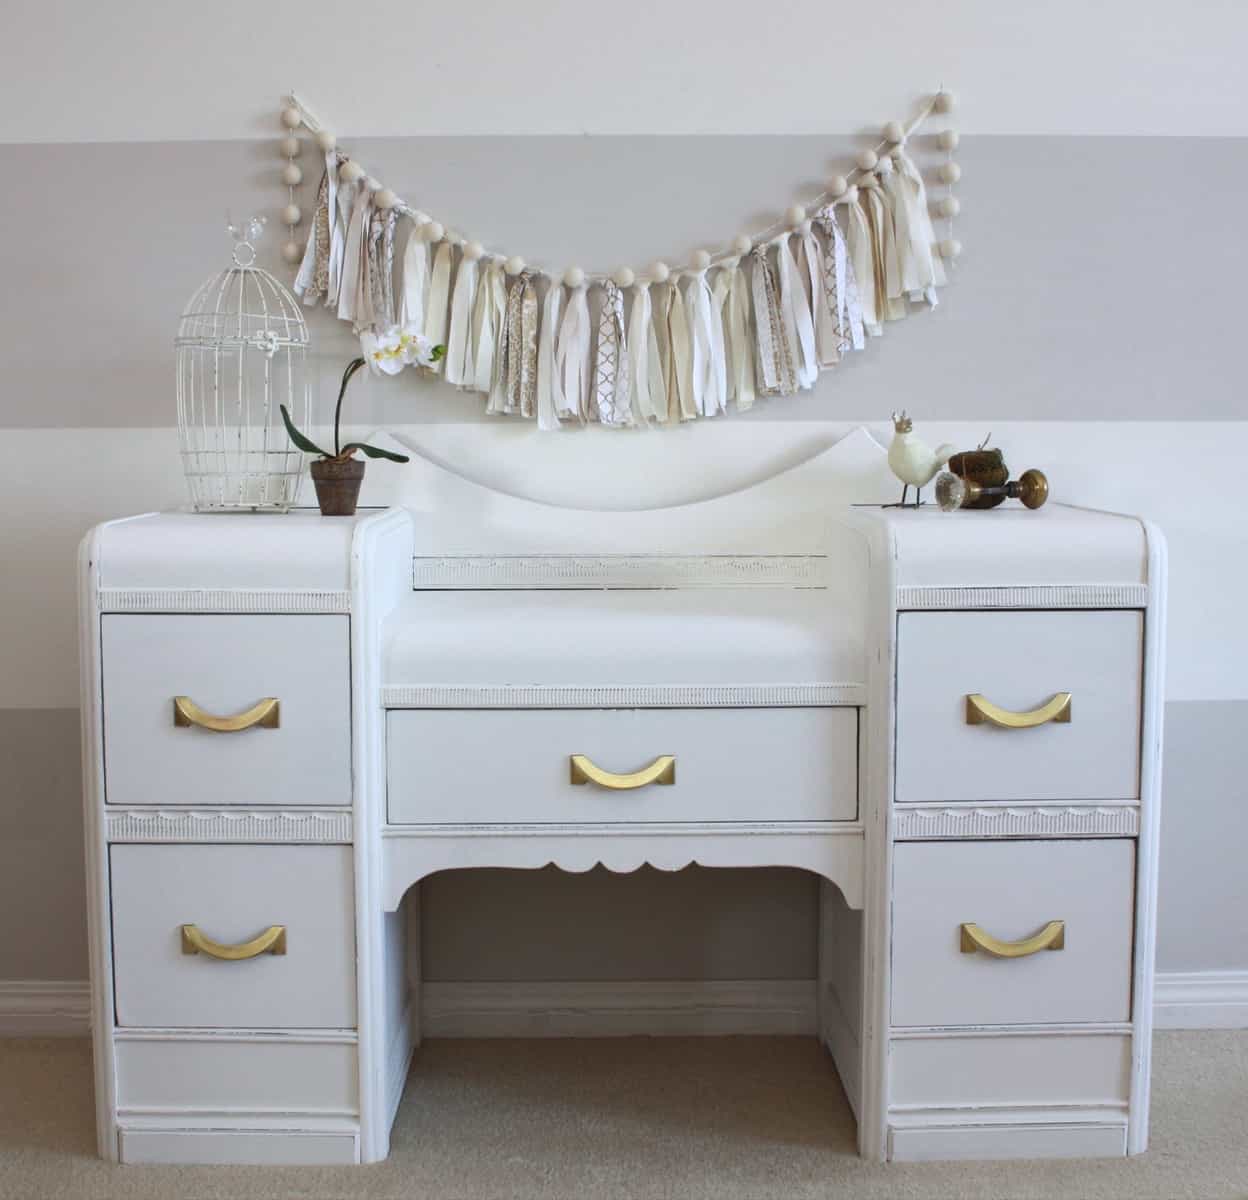 Soft White Vanity #DIY #furniturepaint #paintedfurniture #chalkpaint #vanity #homedecor #white #countrychicpaint - blog.countrychicpaint.com